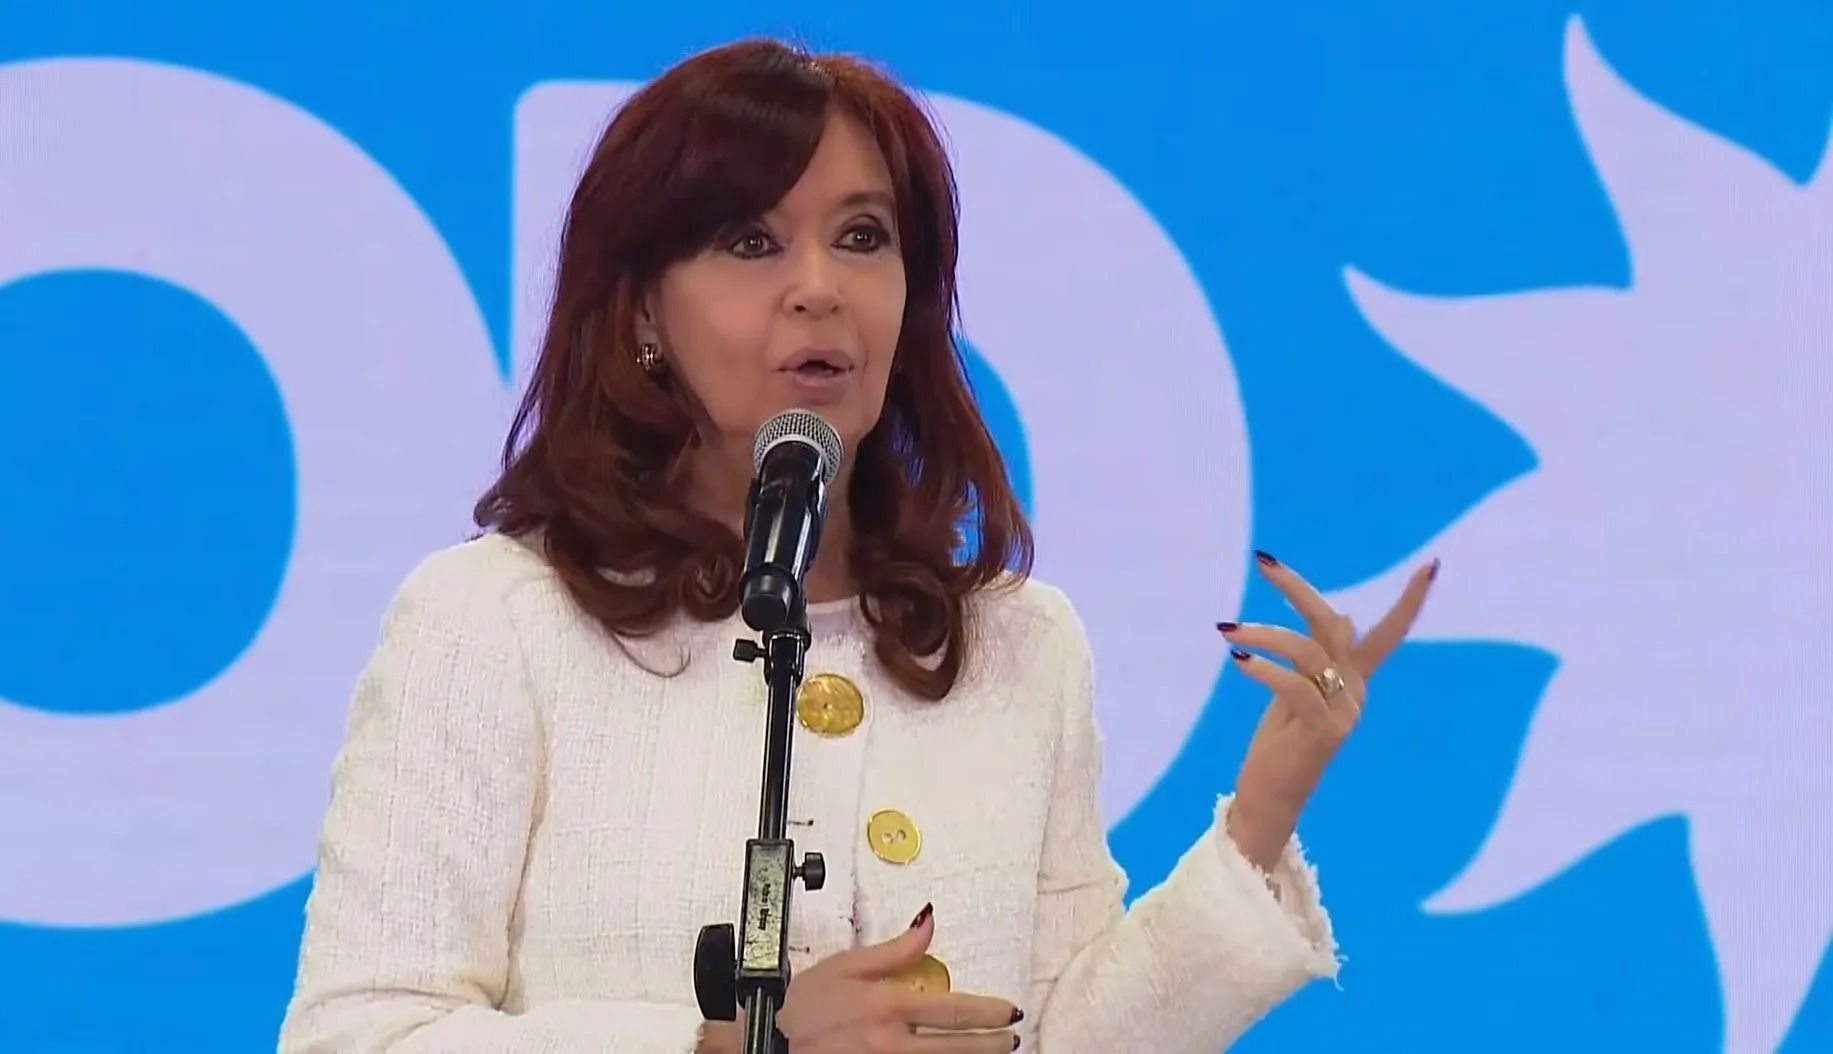 Cristina Kirchner apuntó a la oposición por el marketing político: “Con saltitos y coaching no vamos a ningún lado”